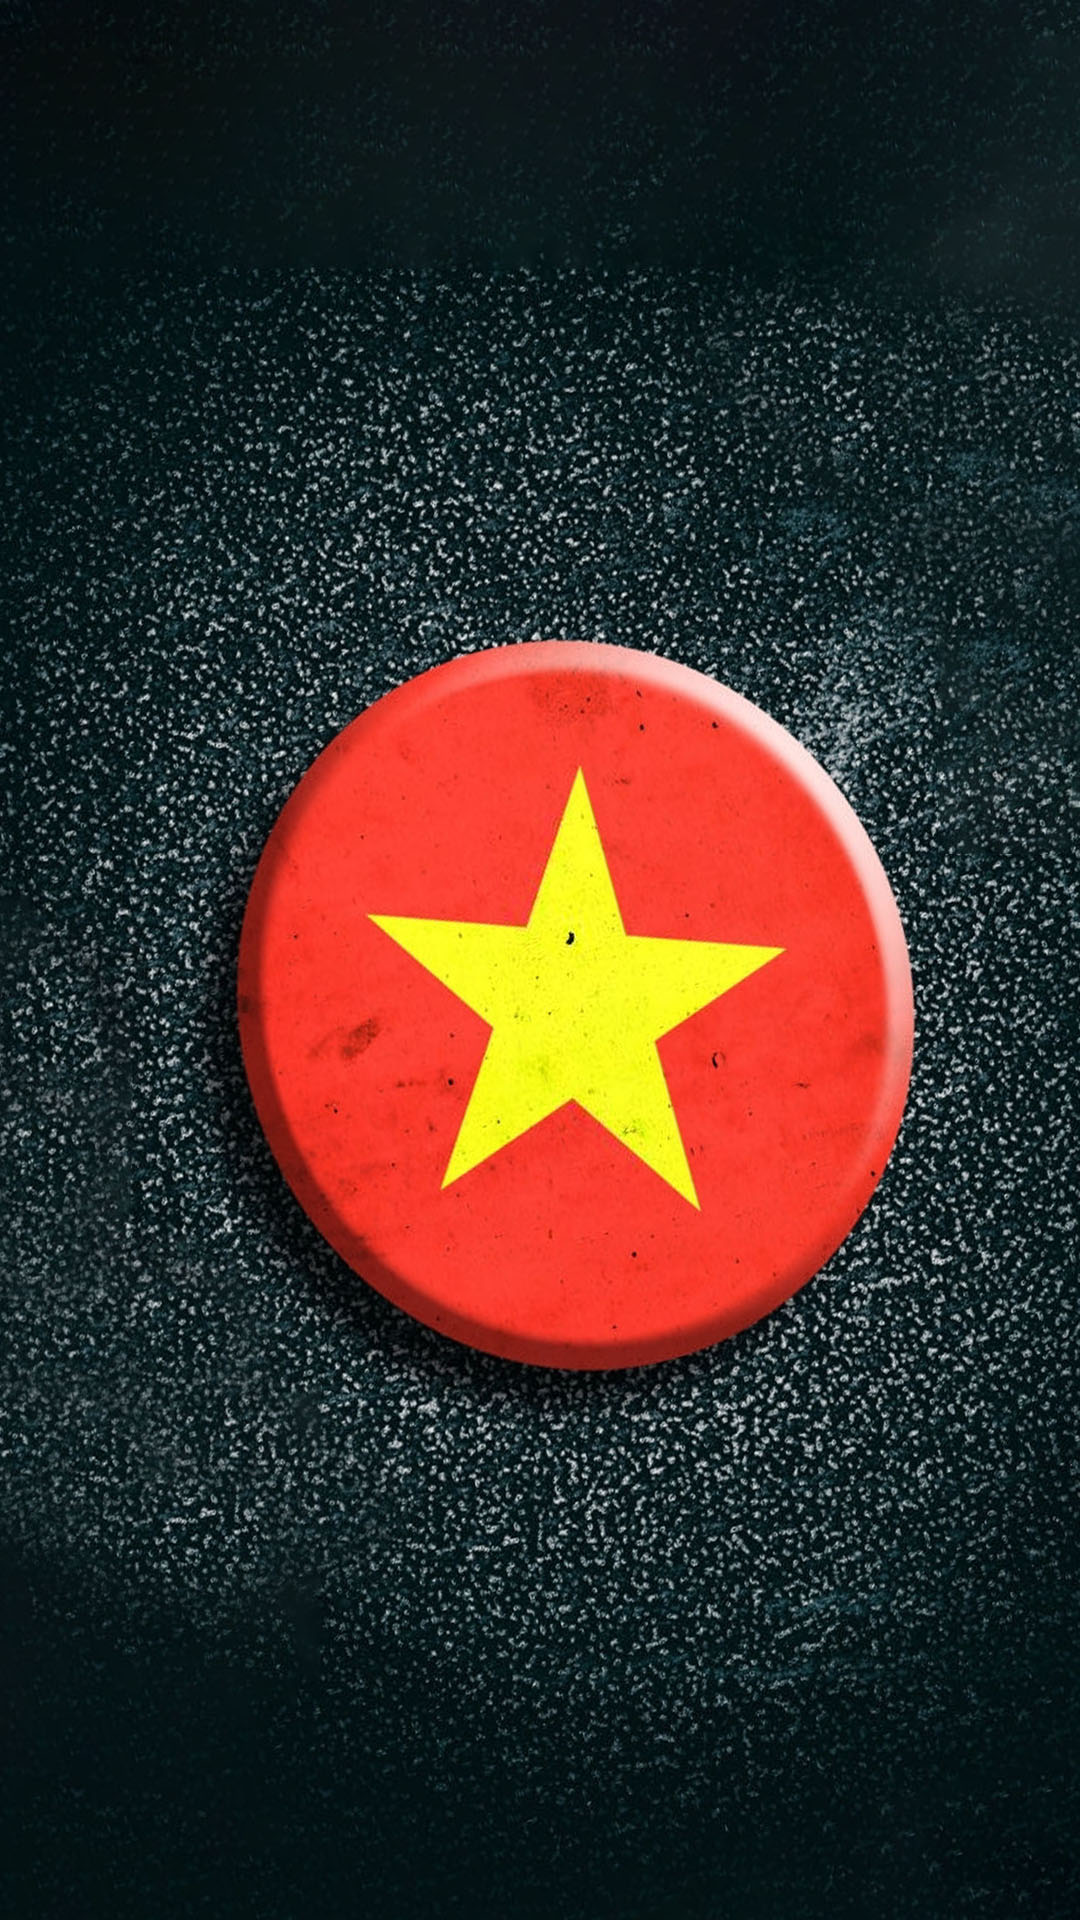 Hình nền cờ Việt Nam tình yêu nước là lựa chọn tuyệt vời để thể hiện tình yêu và lòng quý mến đối với đất nước. Với nhiều mẫu hình nền độc đáo và đầy ý nghĩa, chúng sẽ giúp bạn có một màn hình điện thoại hoặc máy tính thật độc đáo và ấn tượng. Hãy xem hình ảnh liên quan để tìm kiếm cho mình một mẫu hình nền ưng ý.